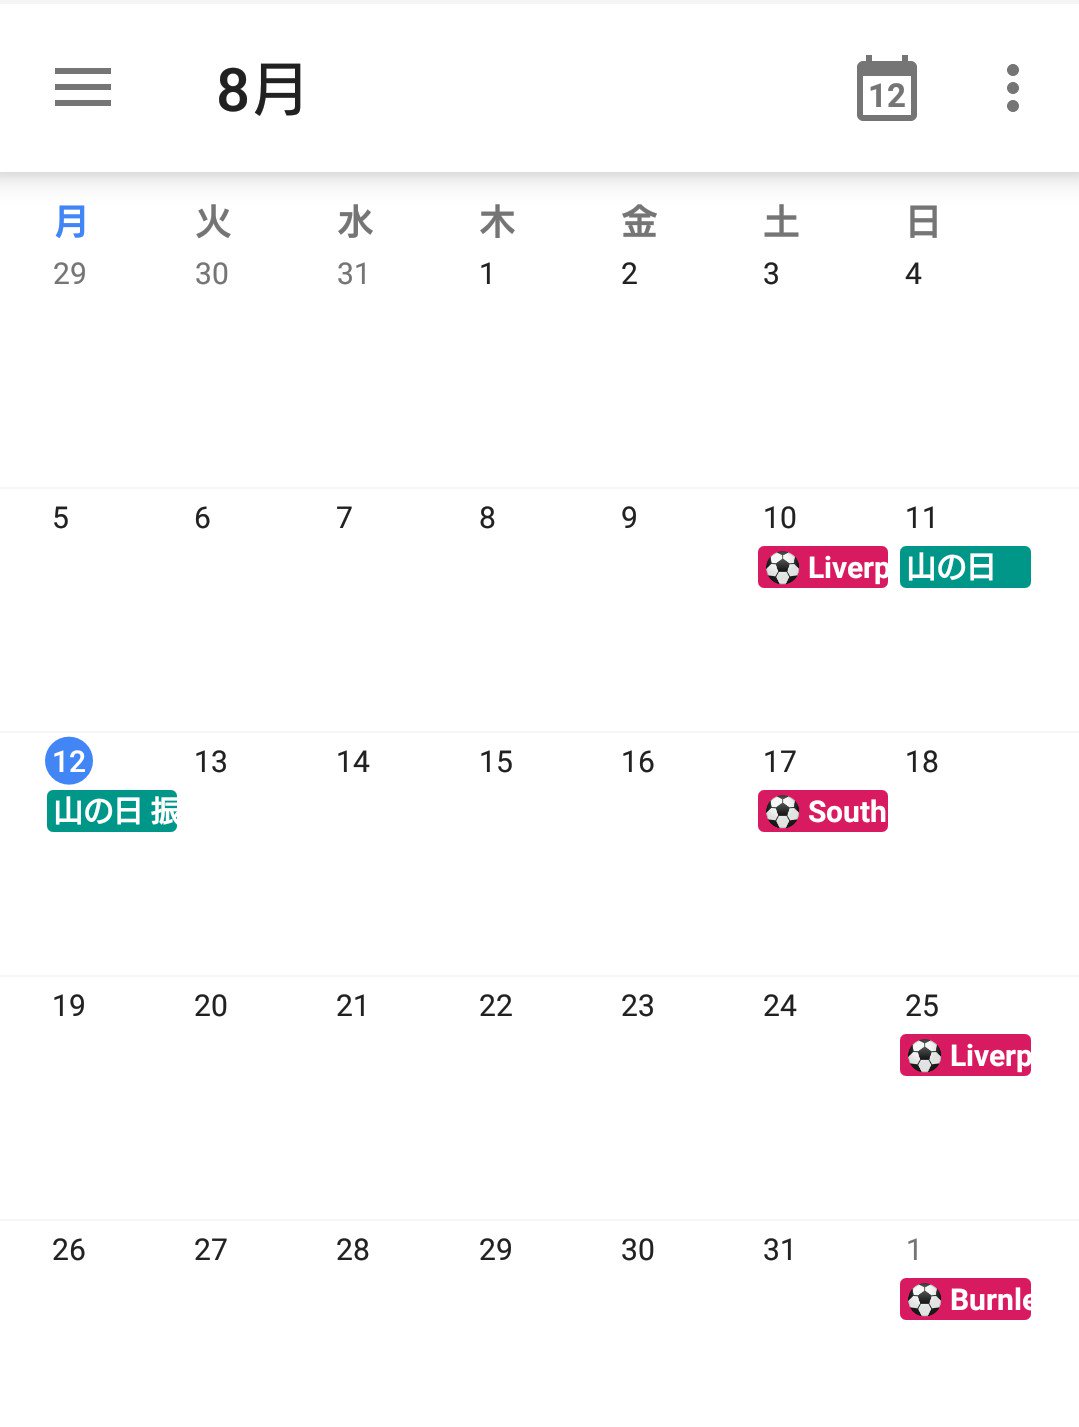 Riona Googleカレンダーにリバプールの試合日程を追加完了 これをメインで使ってるジョルテに反映させて浦和レッズの試合日程と両方表示出来た ところでgoogleカレンダー 何故サッカーのカレンダーがないんだよ T Co